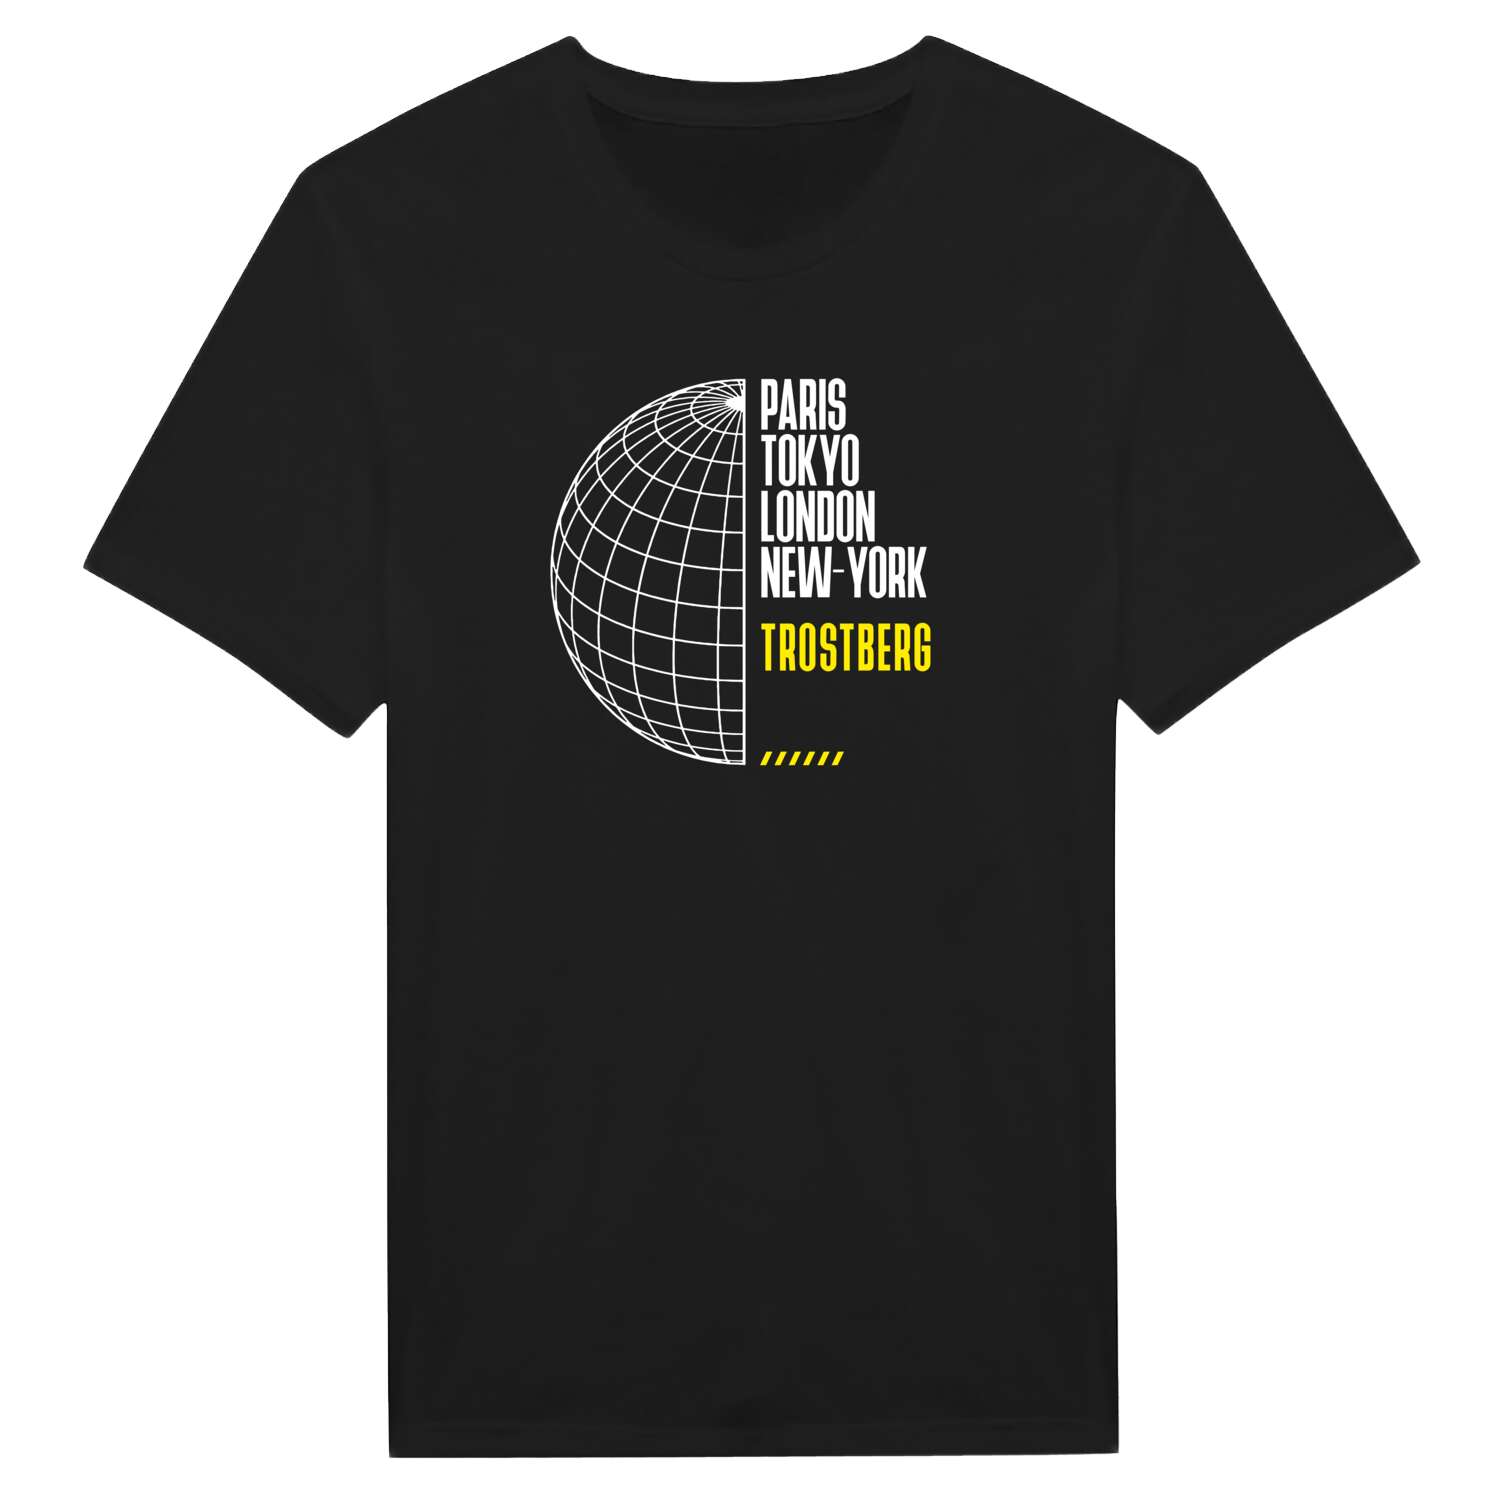 Trostberg T-Shirt »Paris Tokyo London«